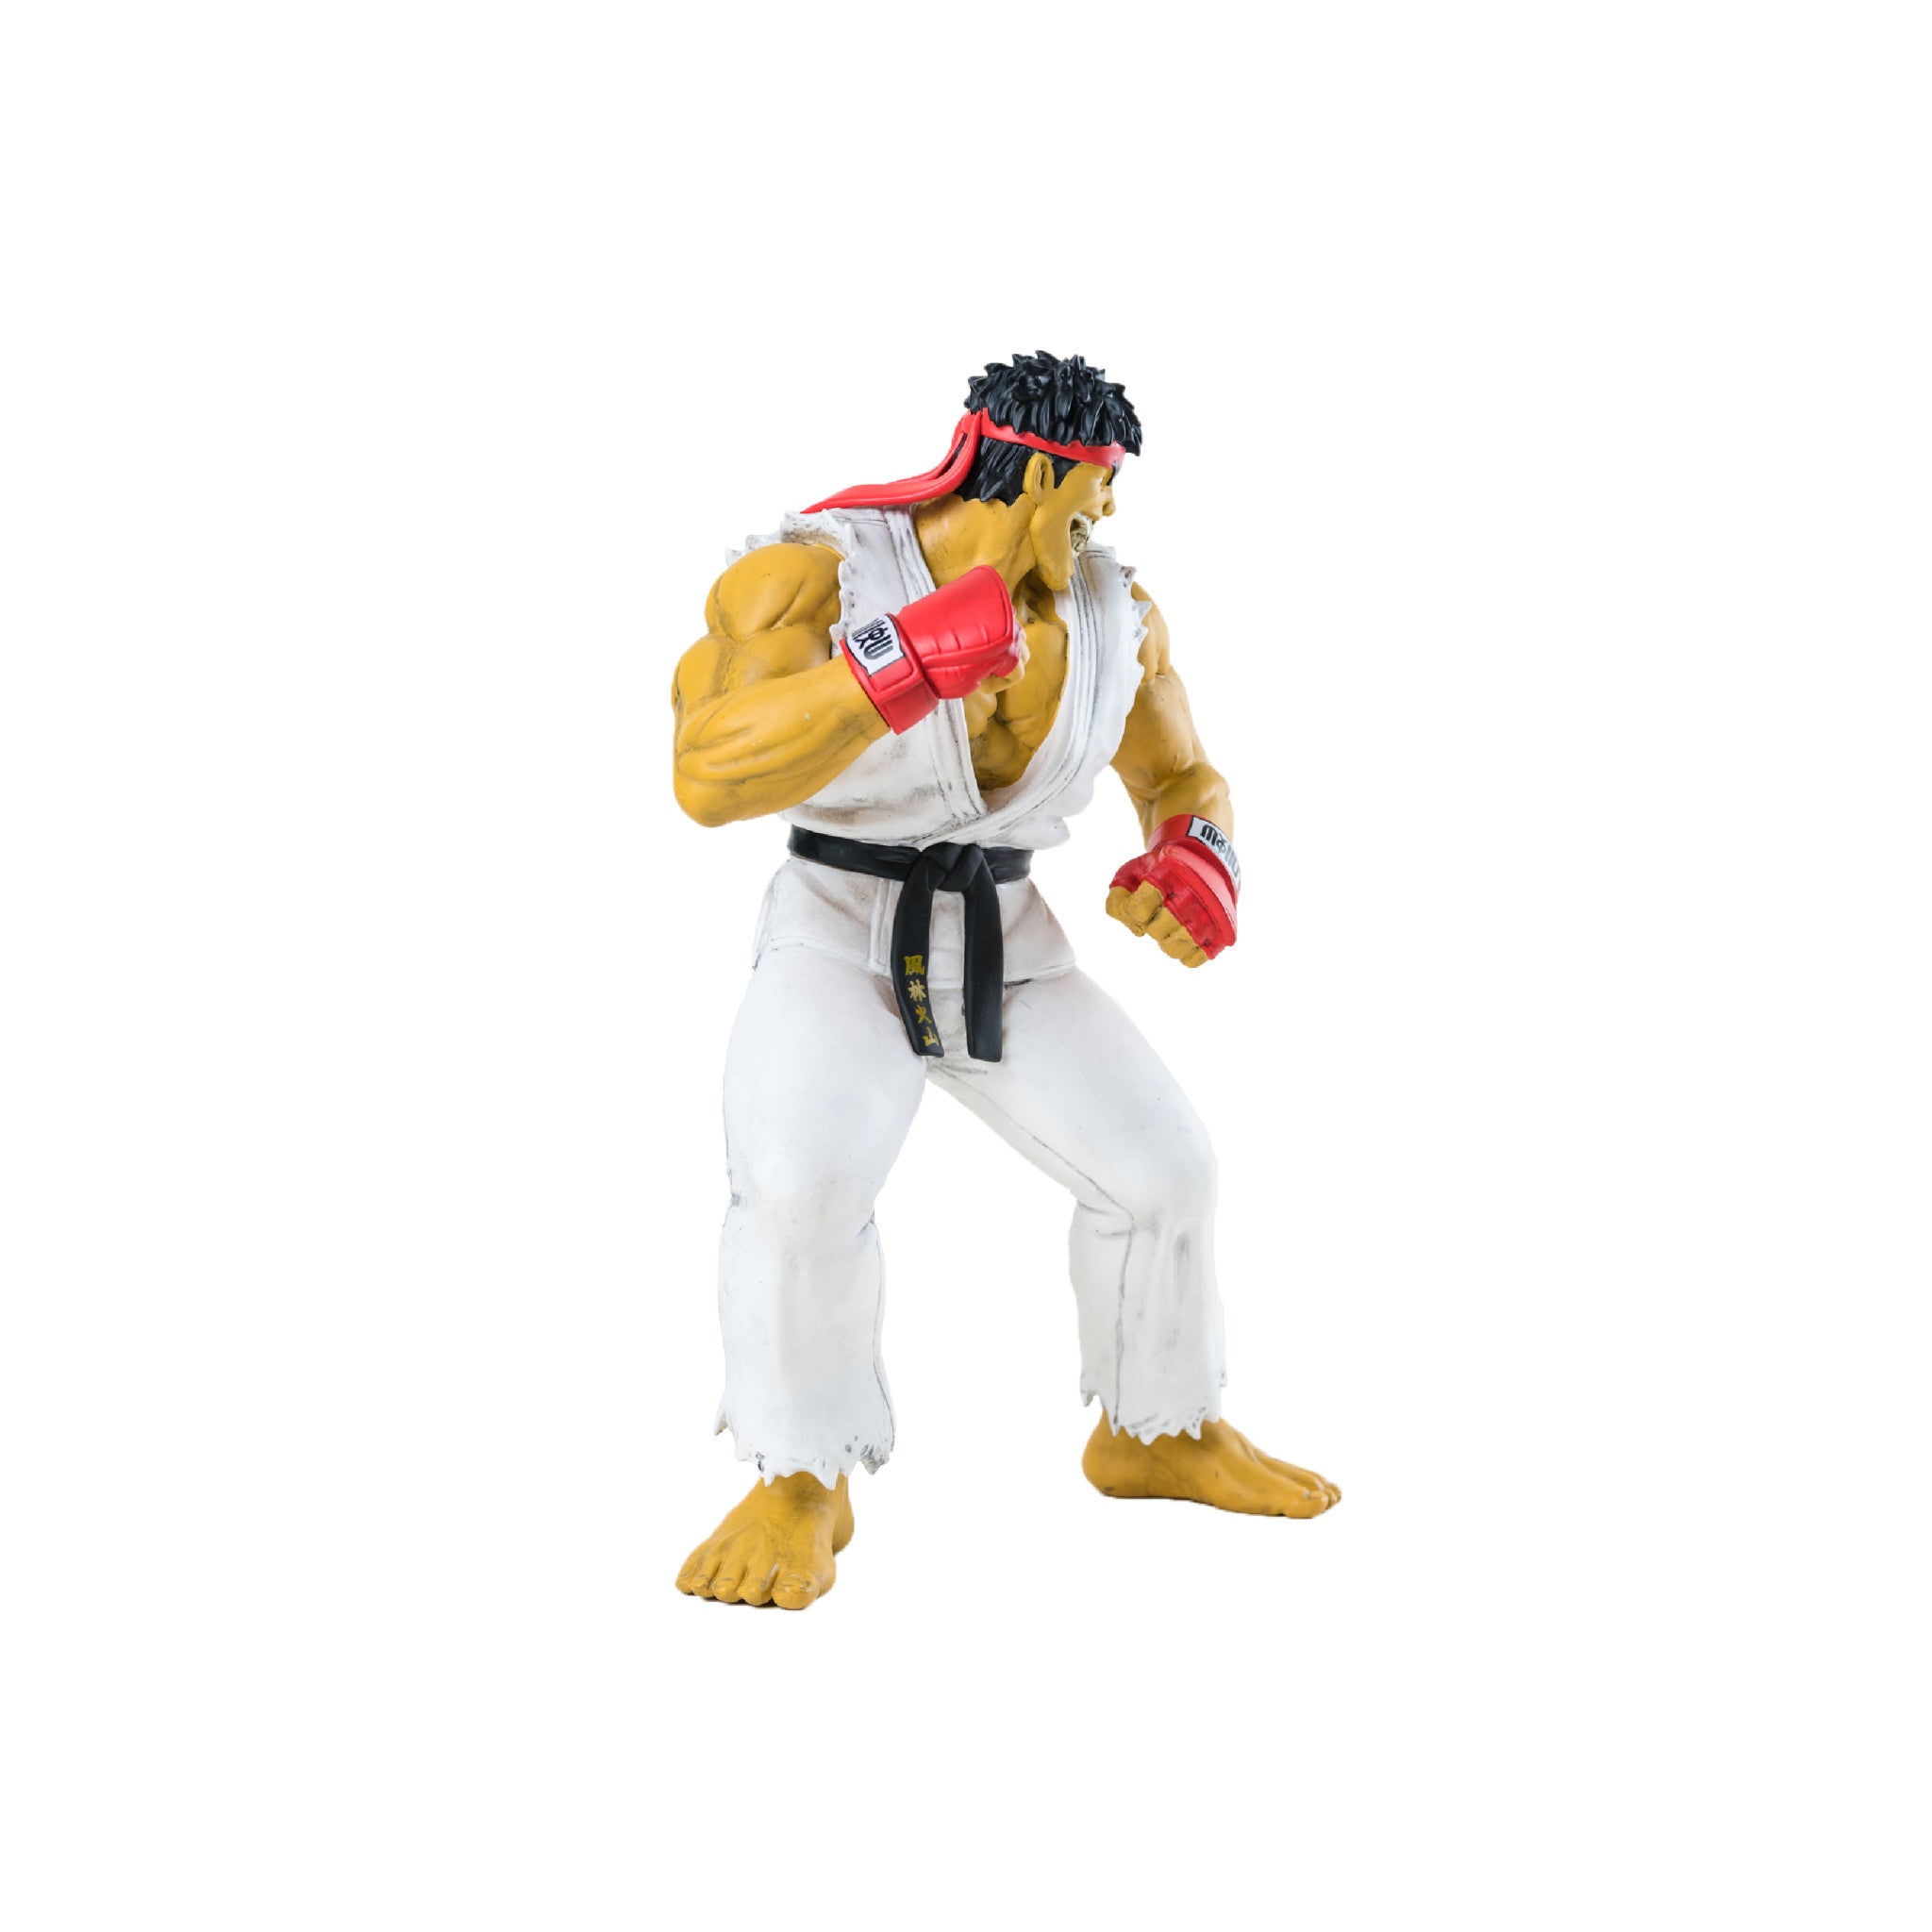 Ron English Street Fighter Ryu Figure - Wynwood Walls Shop